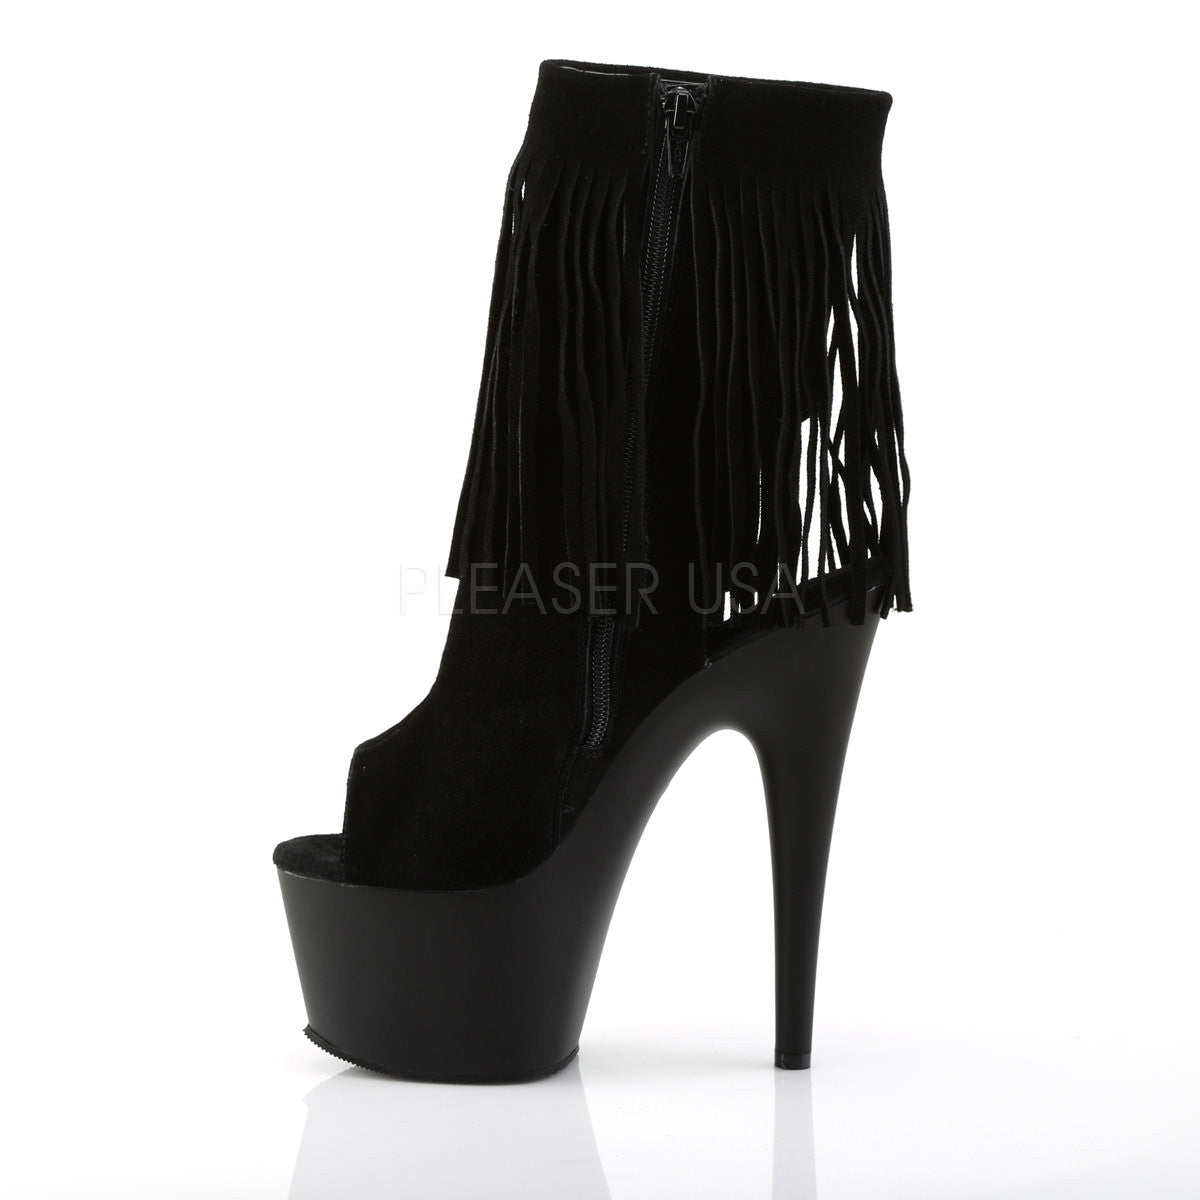 Pleaser ADORE-1019 Black Suede Ankle Boots - Shoecup.com - 3